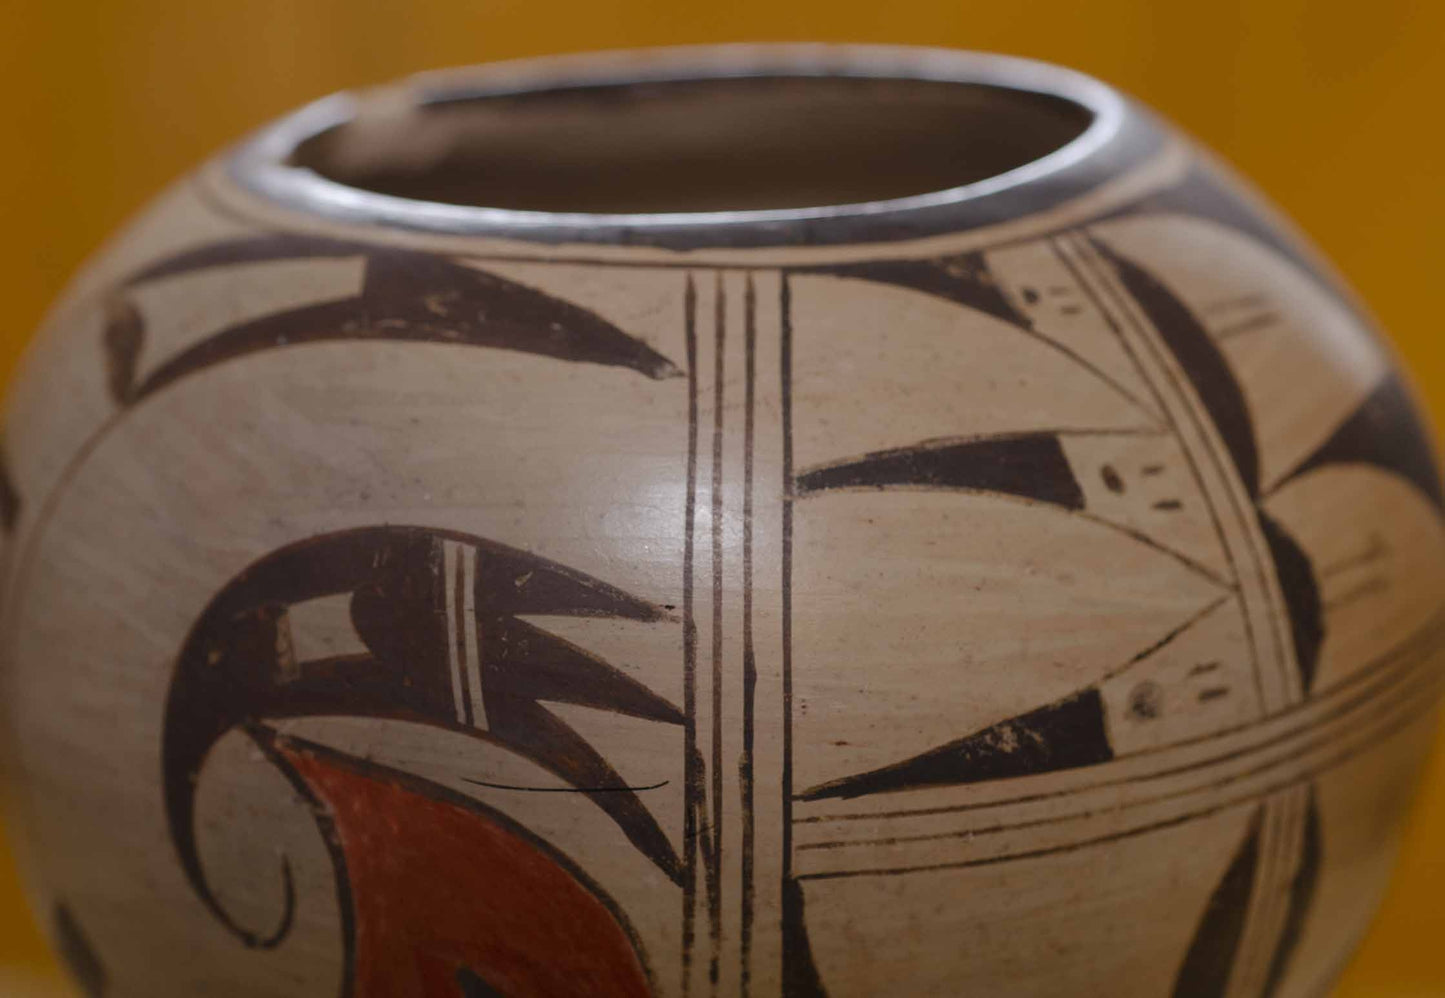 Vintage Hopi Pottery - Nampejo Style